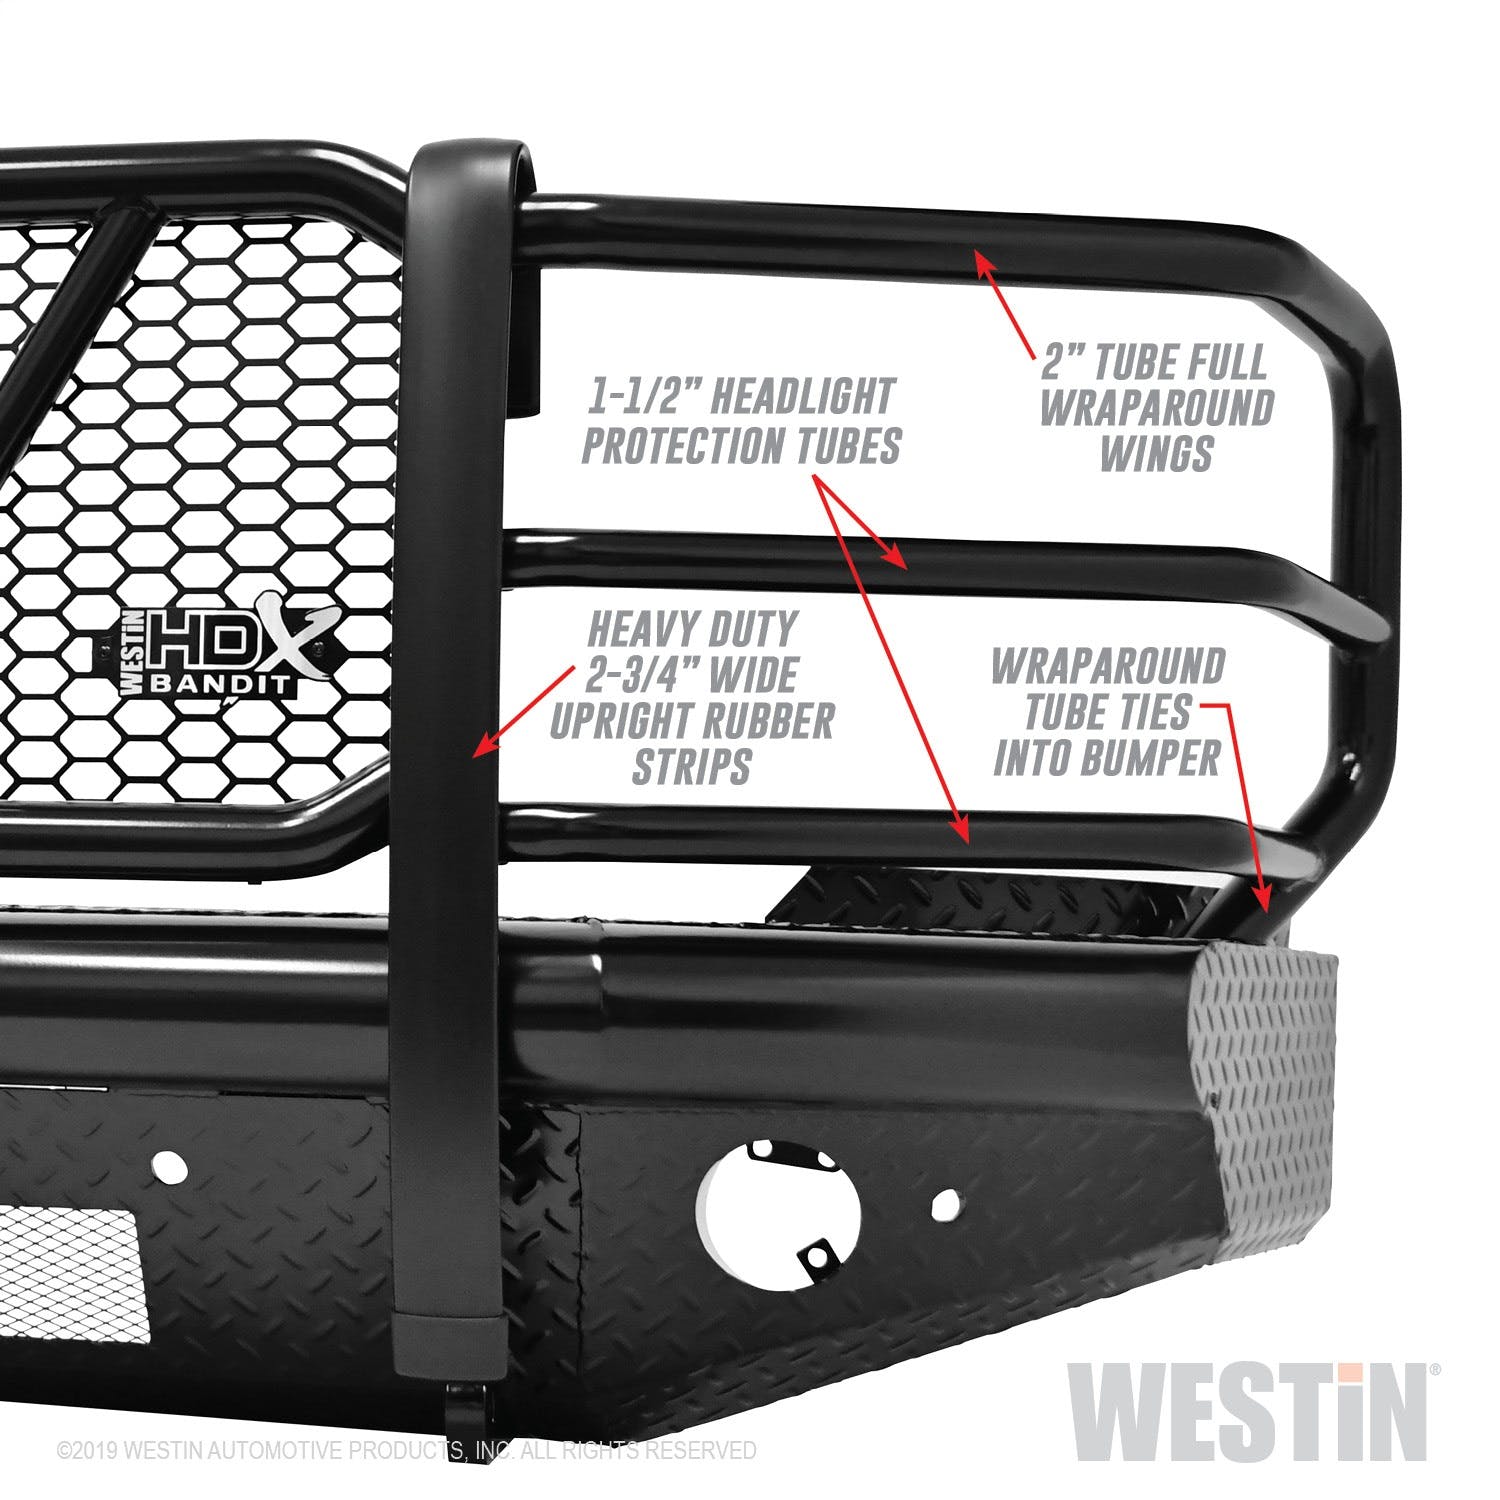 Westin Automotive 58-31155 HDX Bandit Front Bumper Black